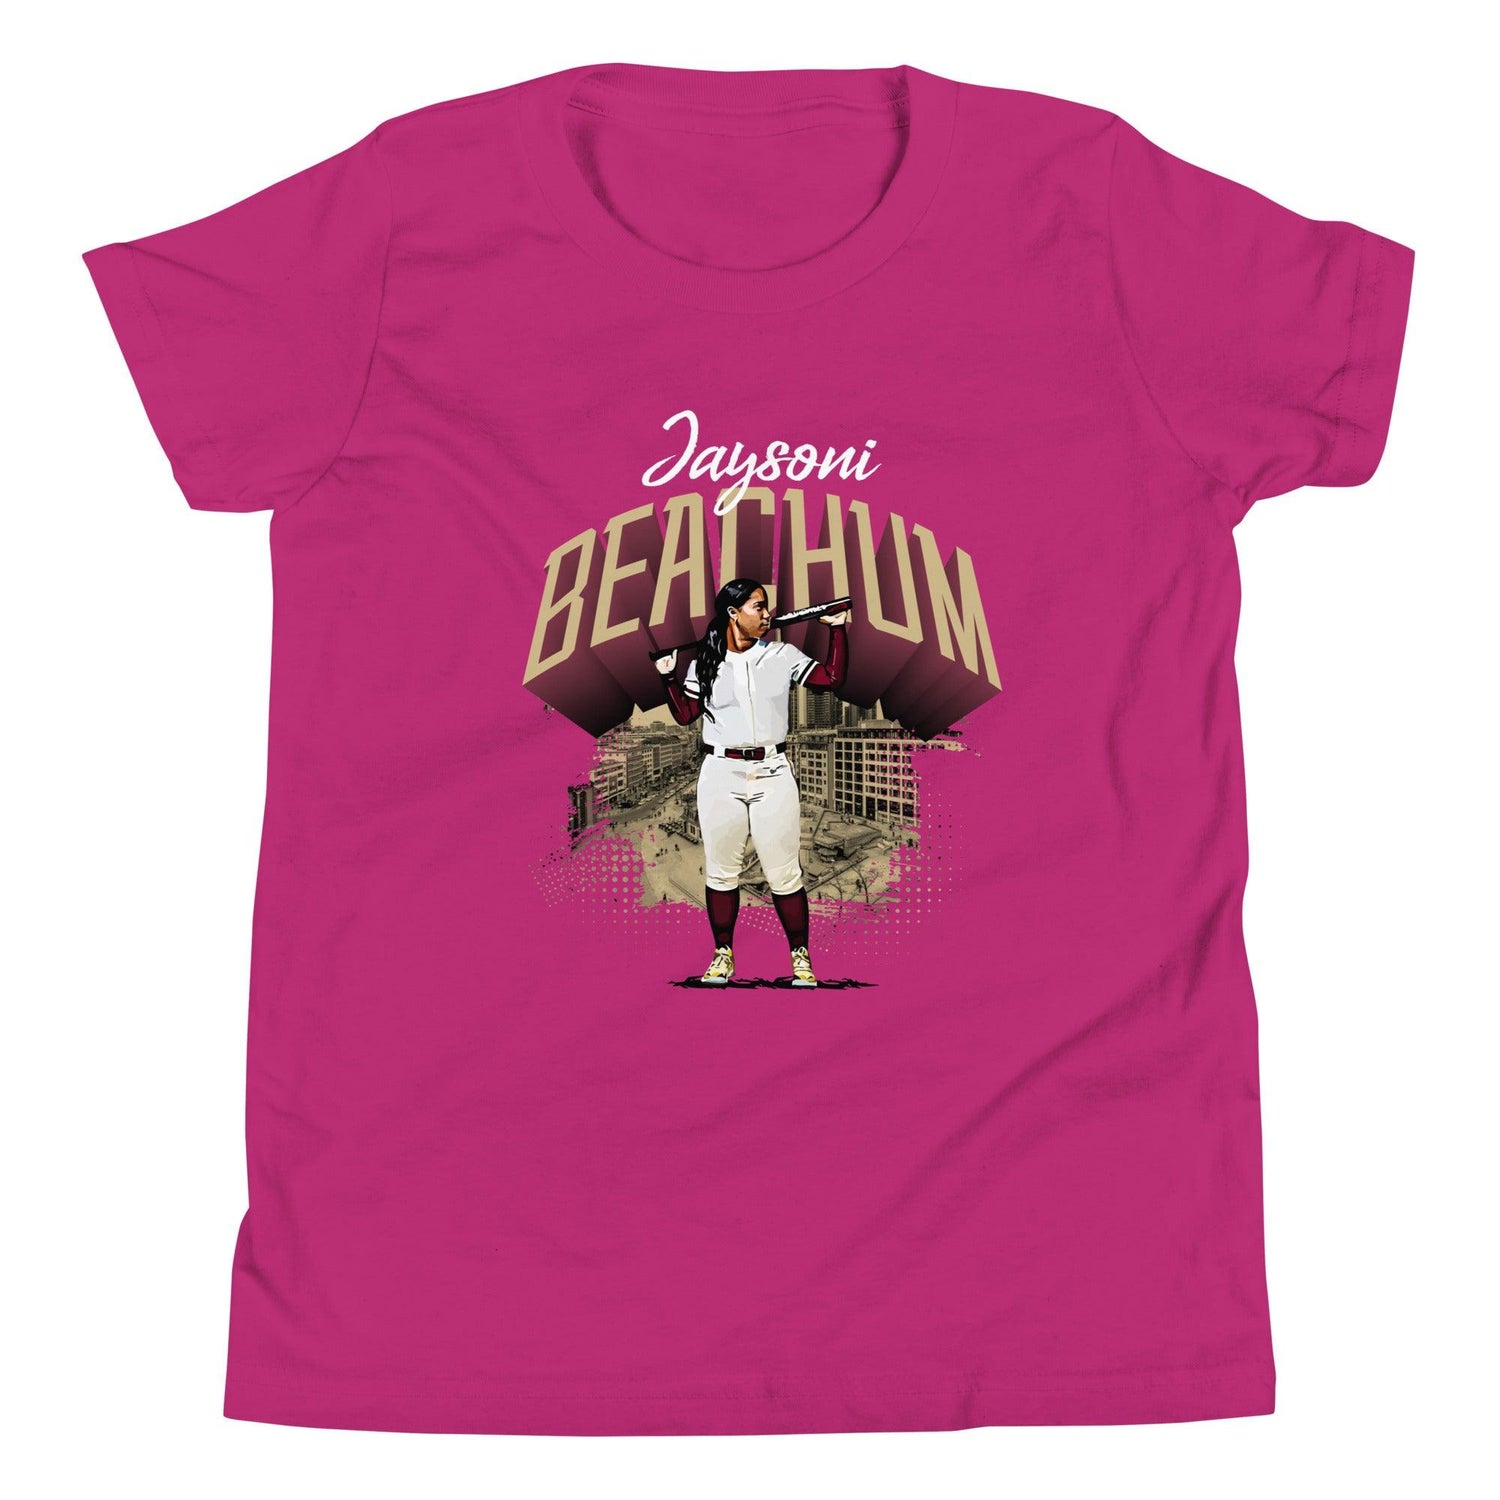 Jaysoni Beachum "Gameday" Youth T-Shirt - Fan Arch